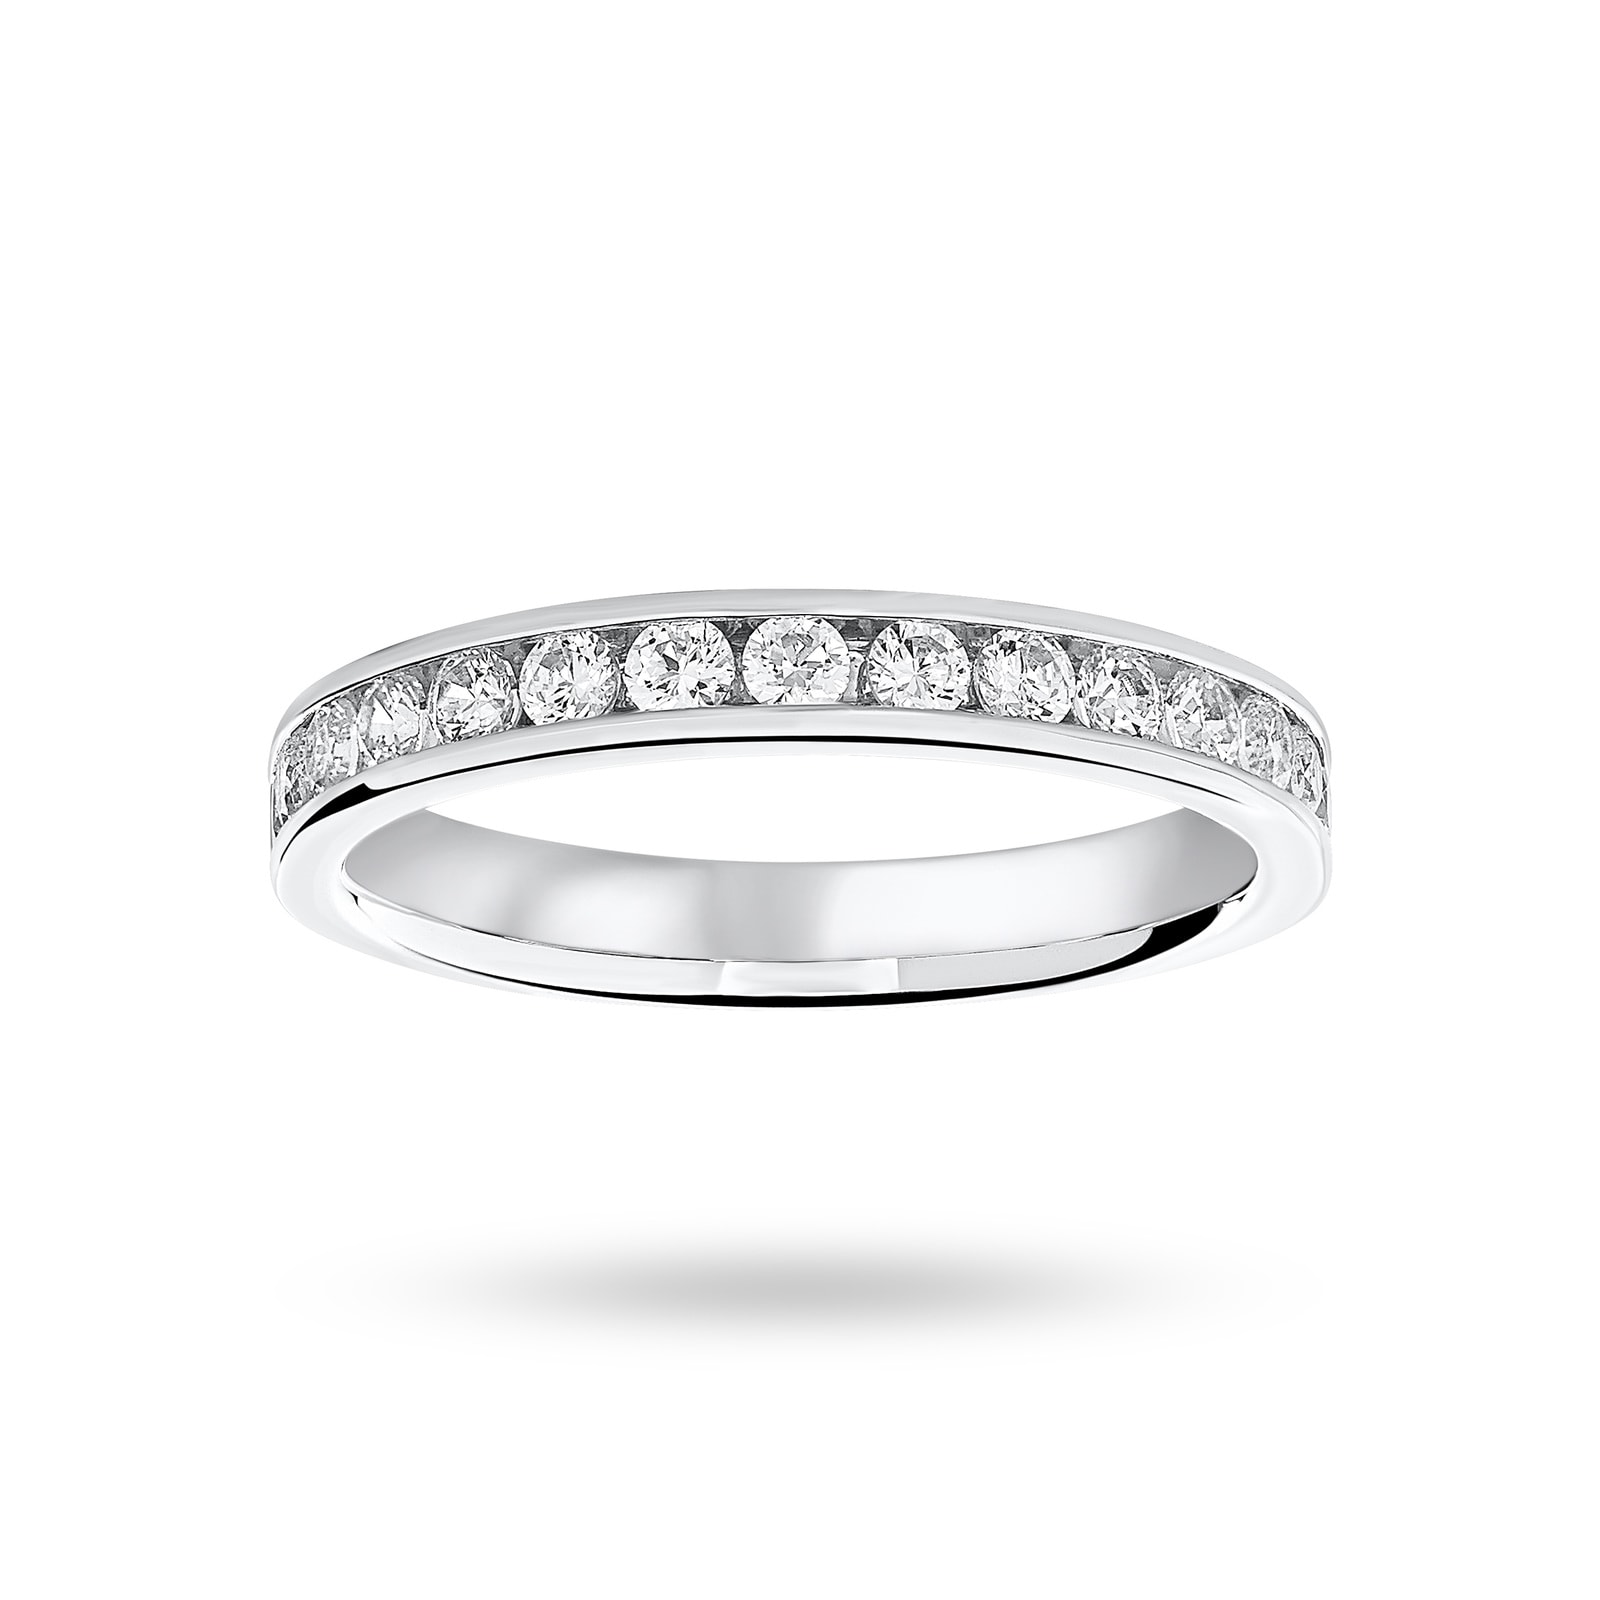 Platinum 0.50 Carat Brilliant Cut Half Eternity Ring - Ring Size N